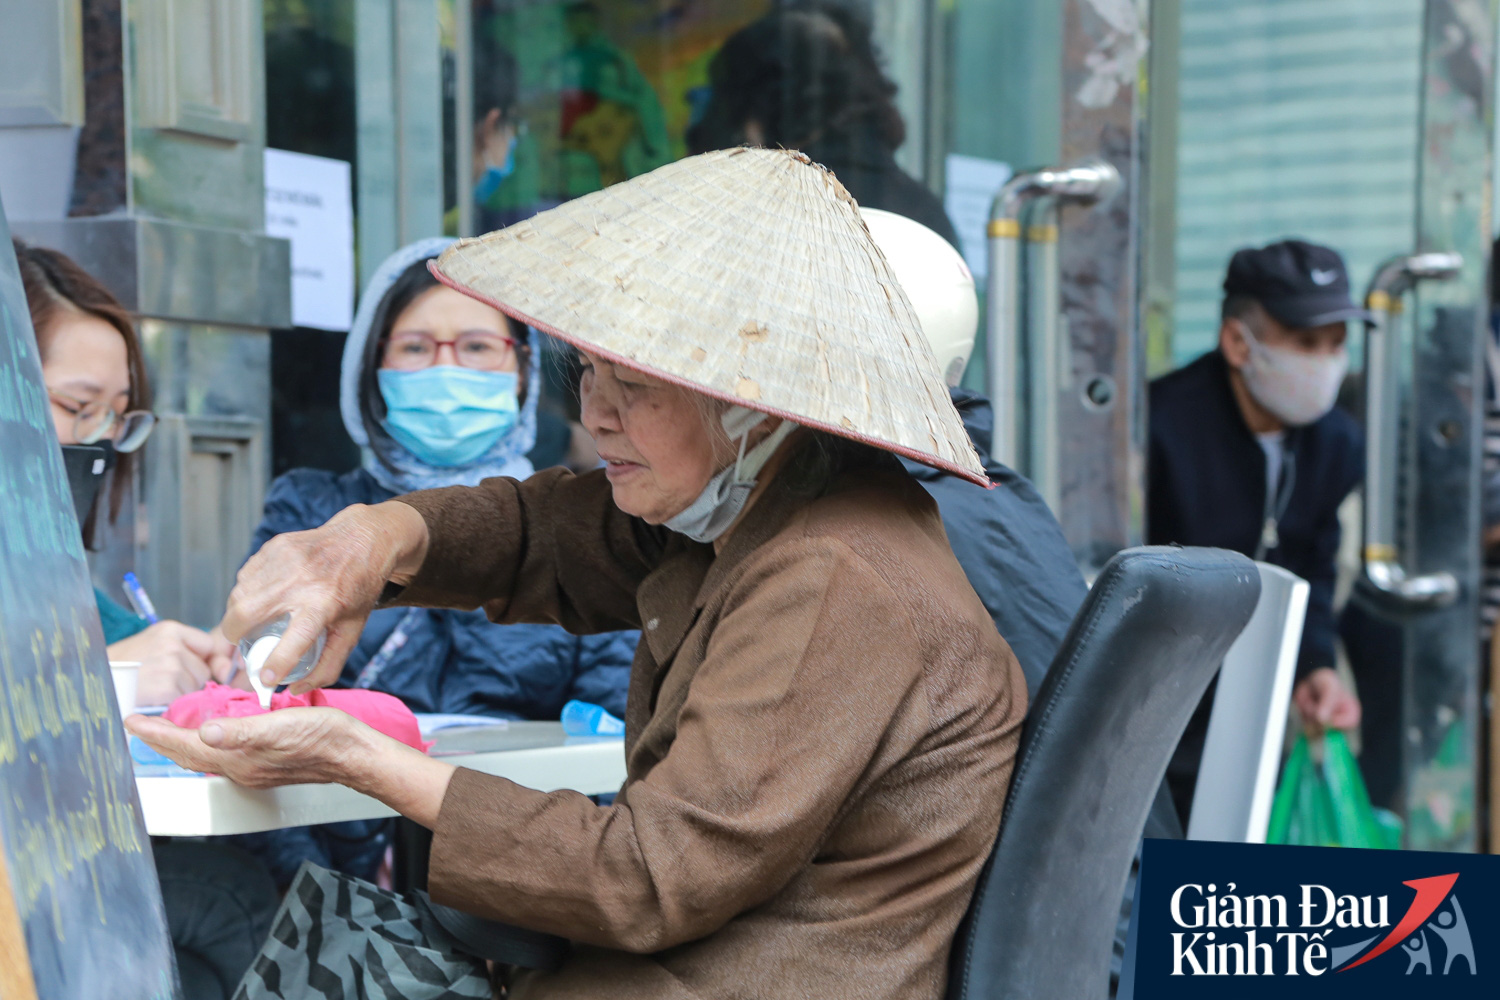 Hàng trăm người dân Hà Nội xếp hàng dài, chờ tới lượt để nhận nhu yếu phẩm tại siêu thị hạnh phúc - Ảnh 10.